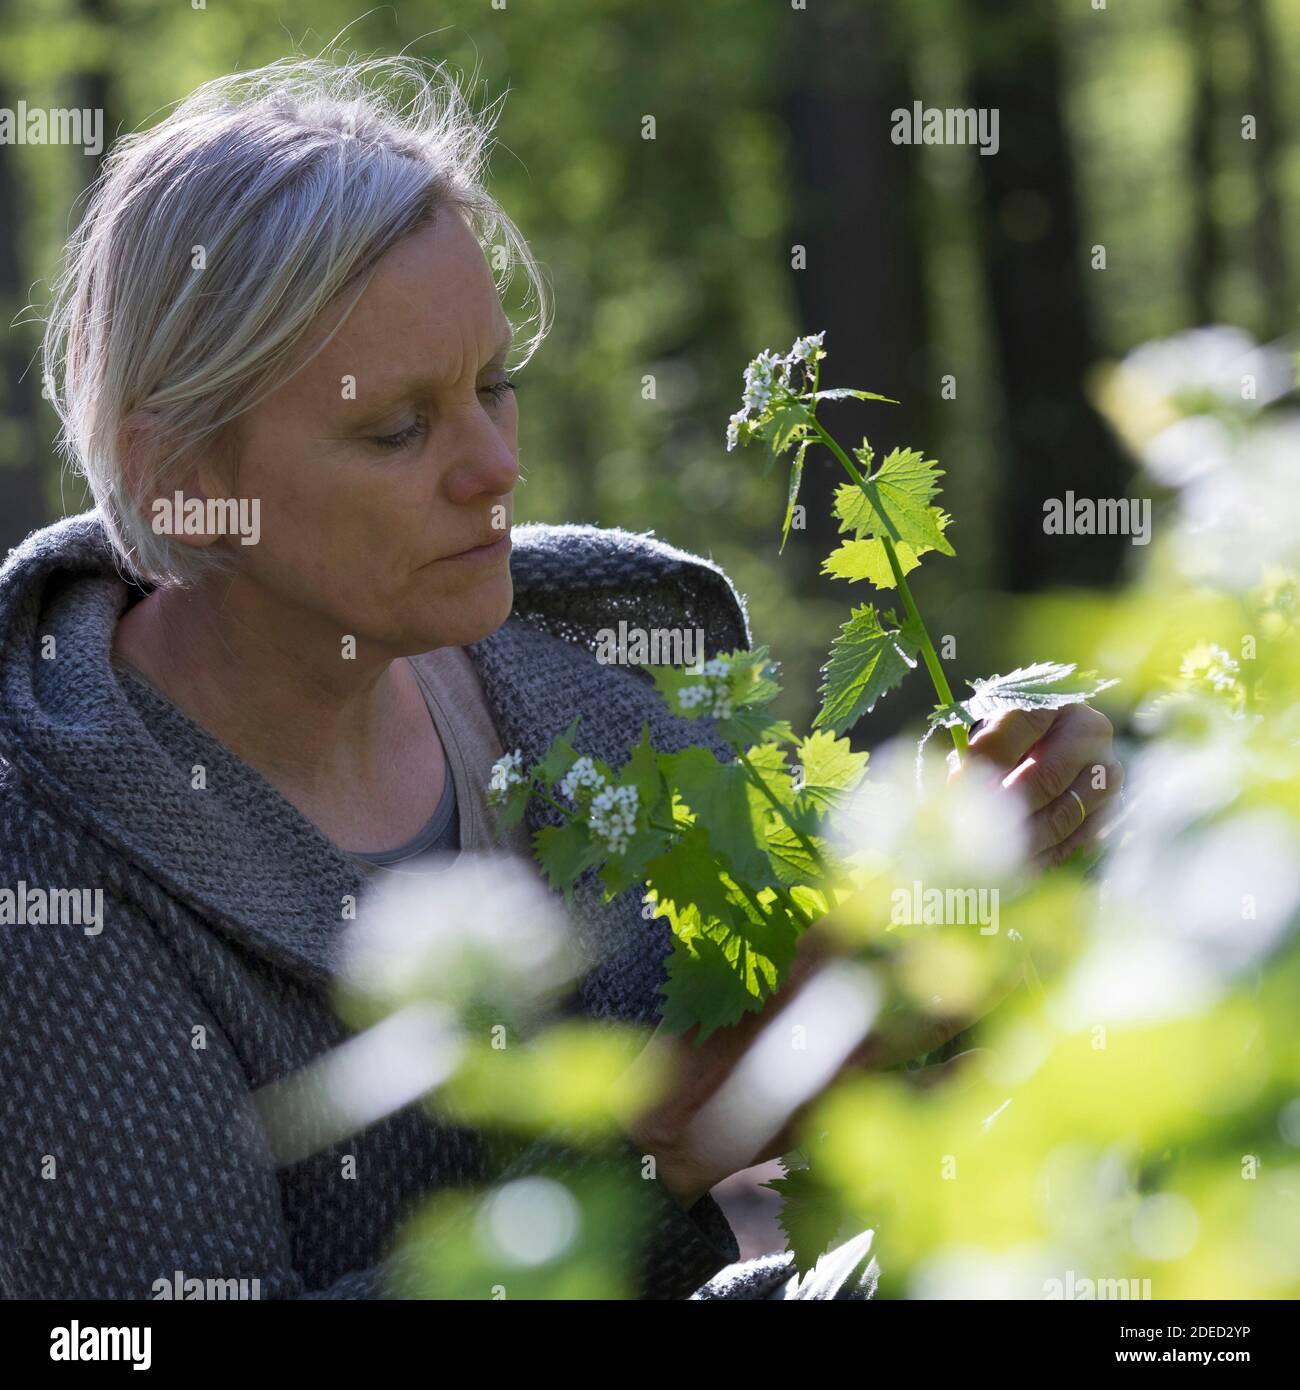 Mostaza de ajo, Ajo de Hedge, Jack-by-the-Hedge (Alliaria petiolata), mujer cosechando mostaza de ajo en un bosque, Alemania Foto de stock